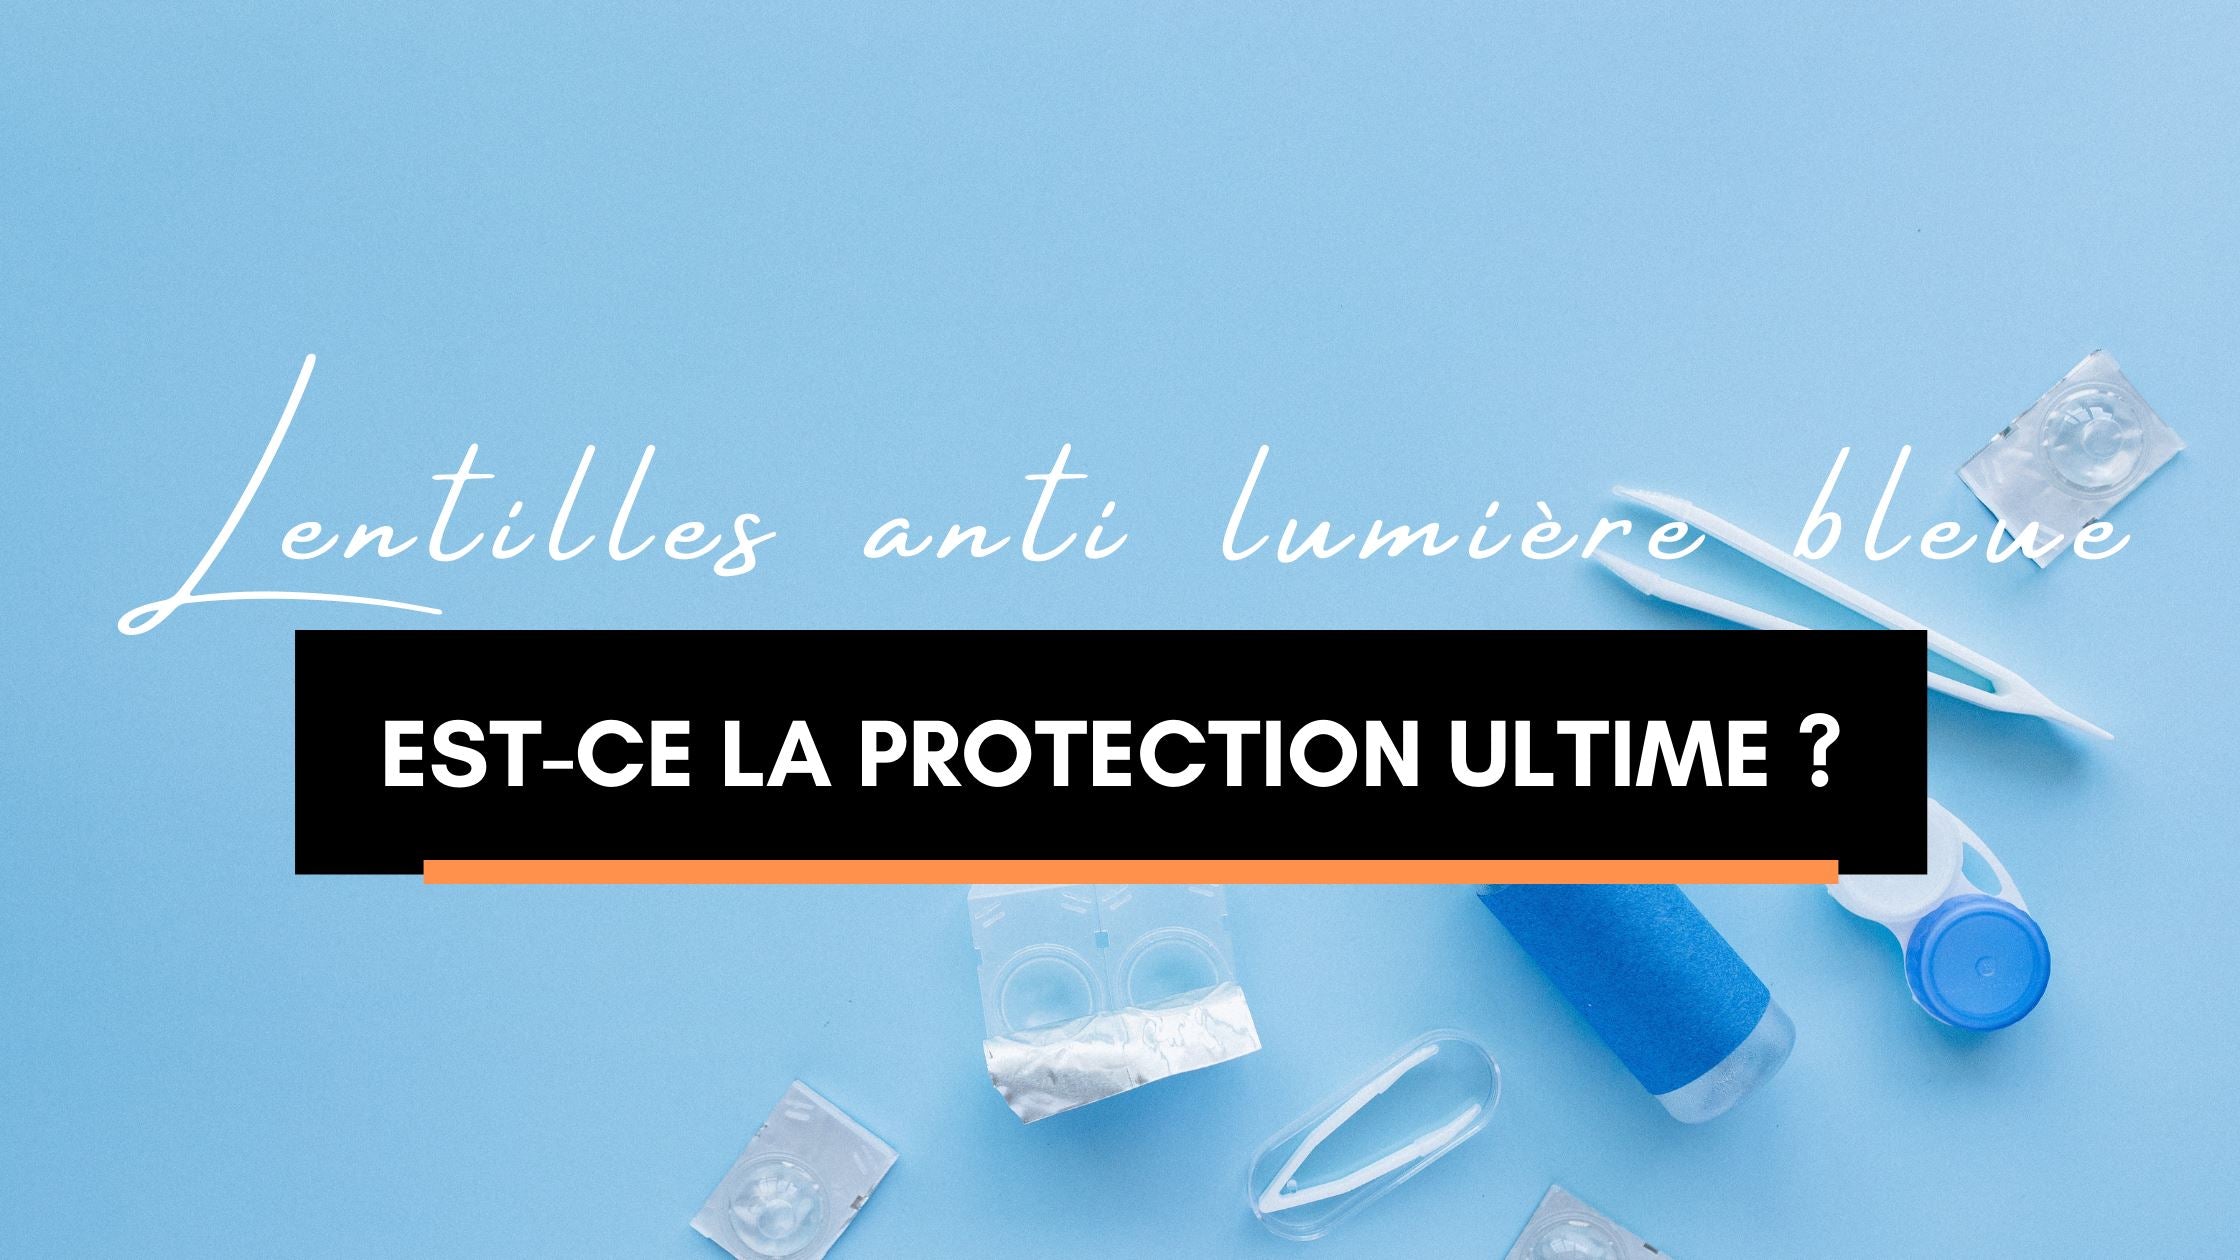 Lentilles anti lumière bleue | Protection Ultime ?